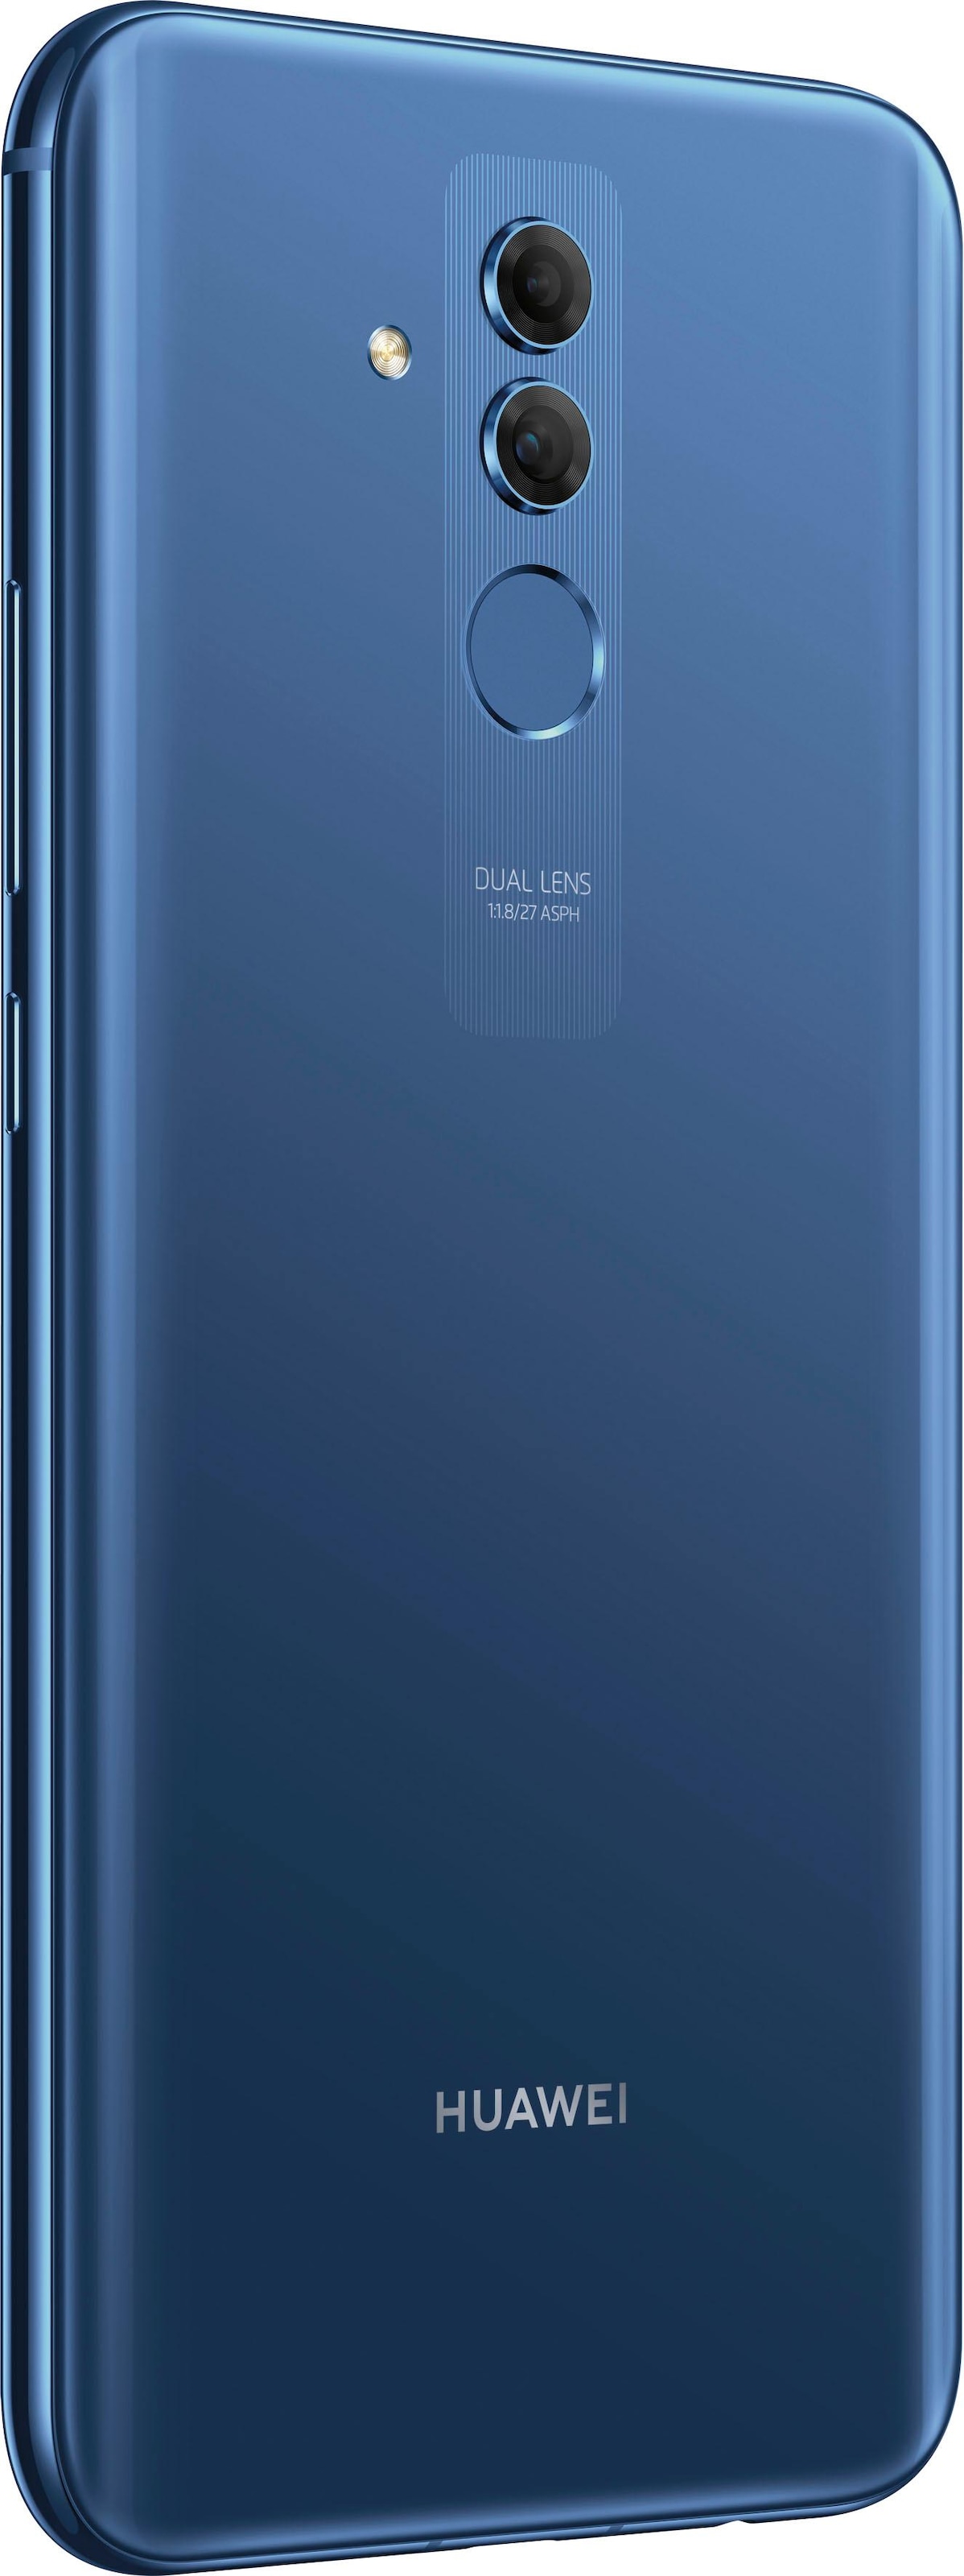 Huawei Smartphone »Mate 20 lite«, Sapphire Blue, 16 cm/6,3 Zoll, 64 GB  Speicherplatz, 20 MP Kamera, 24 Monate Herstellergarantie ➥ 3 Jahre XXL  Garantie | UNIVERSAL